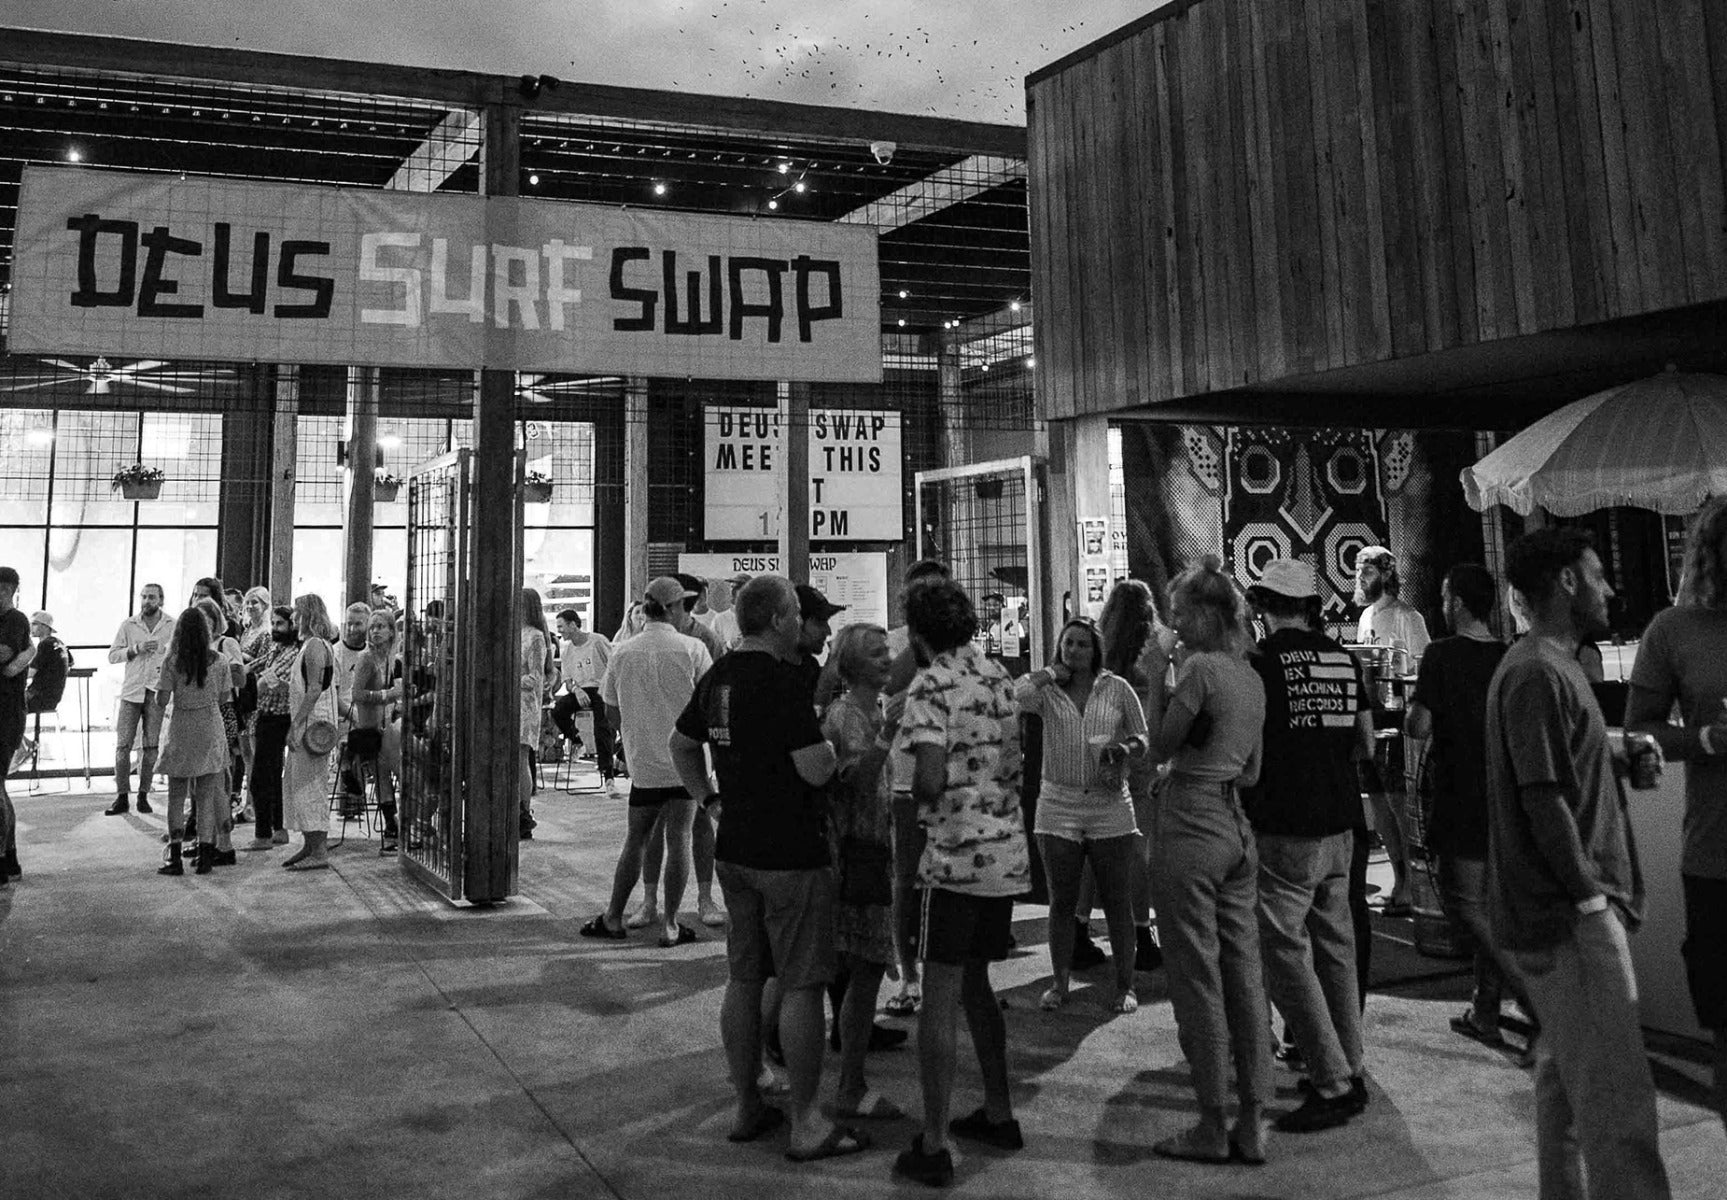 crowd under Deus surf swap sign